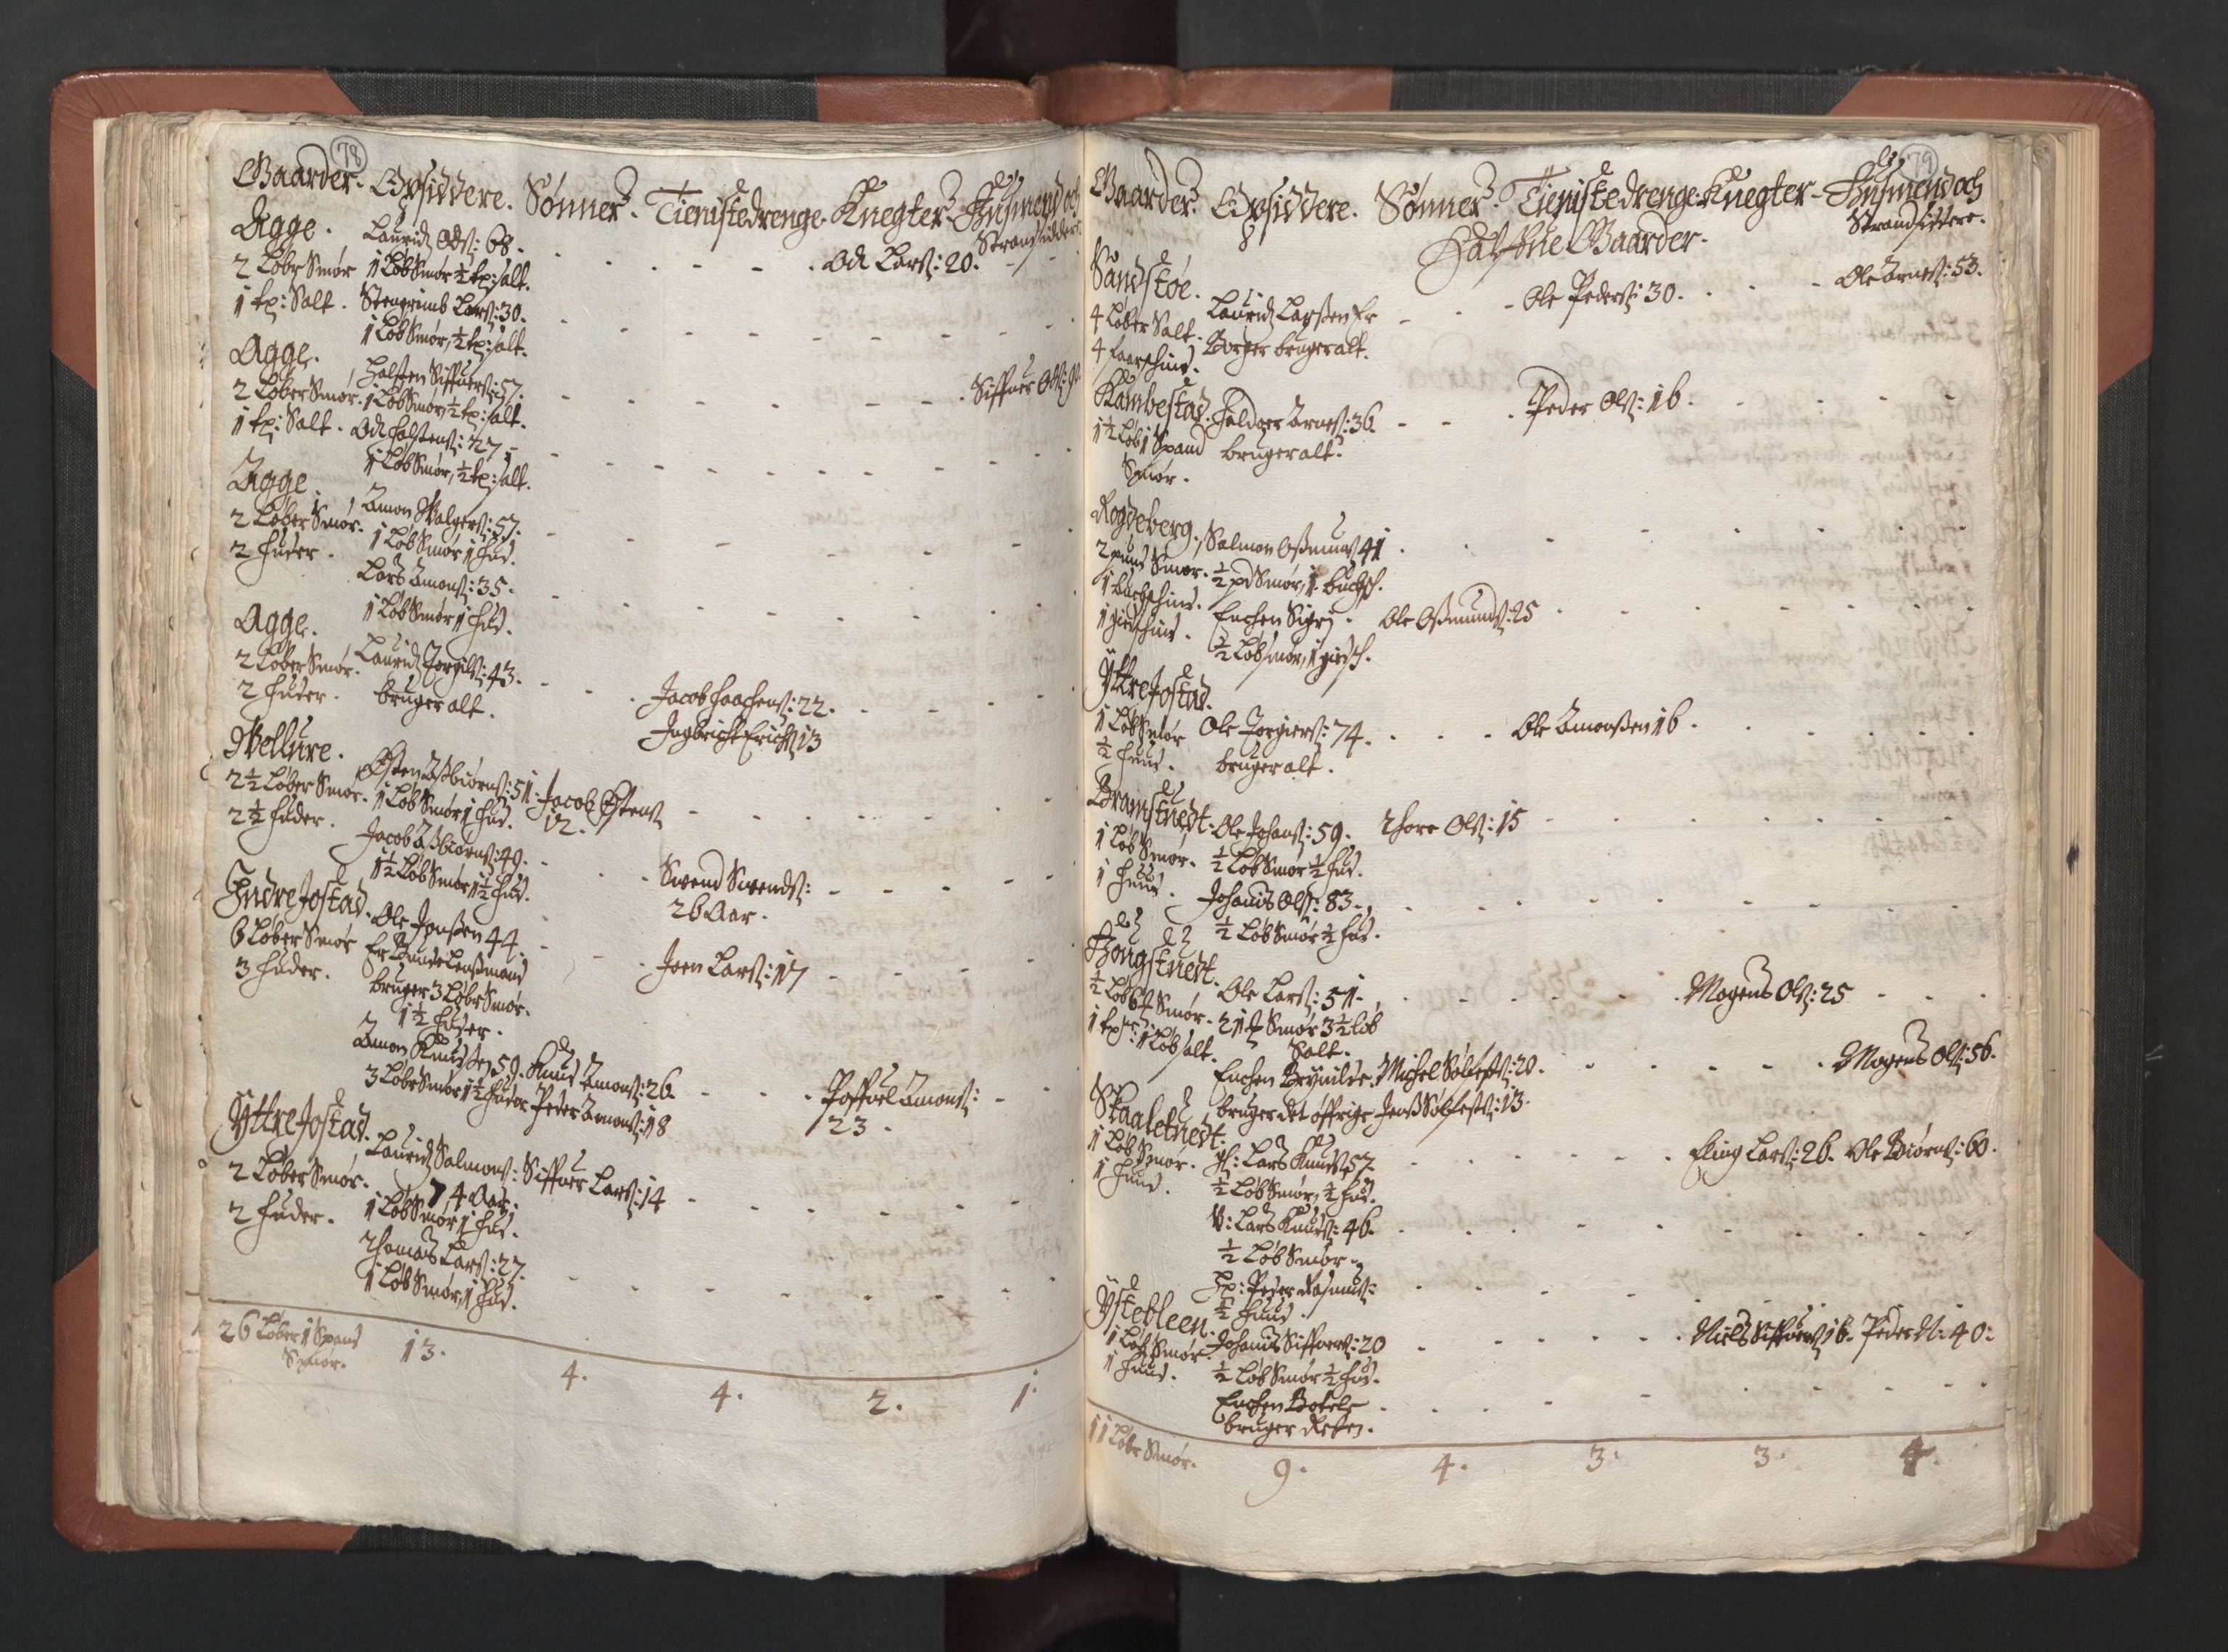 RA, Bailiff's Census 1664-1666, no. 14: Hardanger len, Ytre Sogn fogderi and Indre Sogn fogderi, 1664-1665, p. 78-79